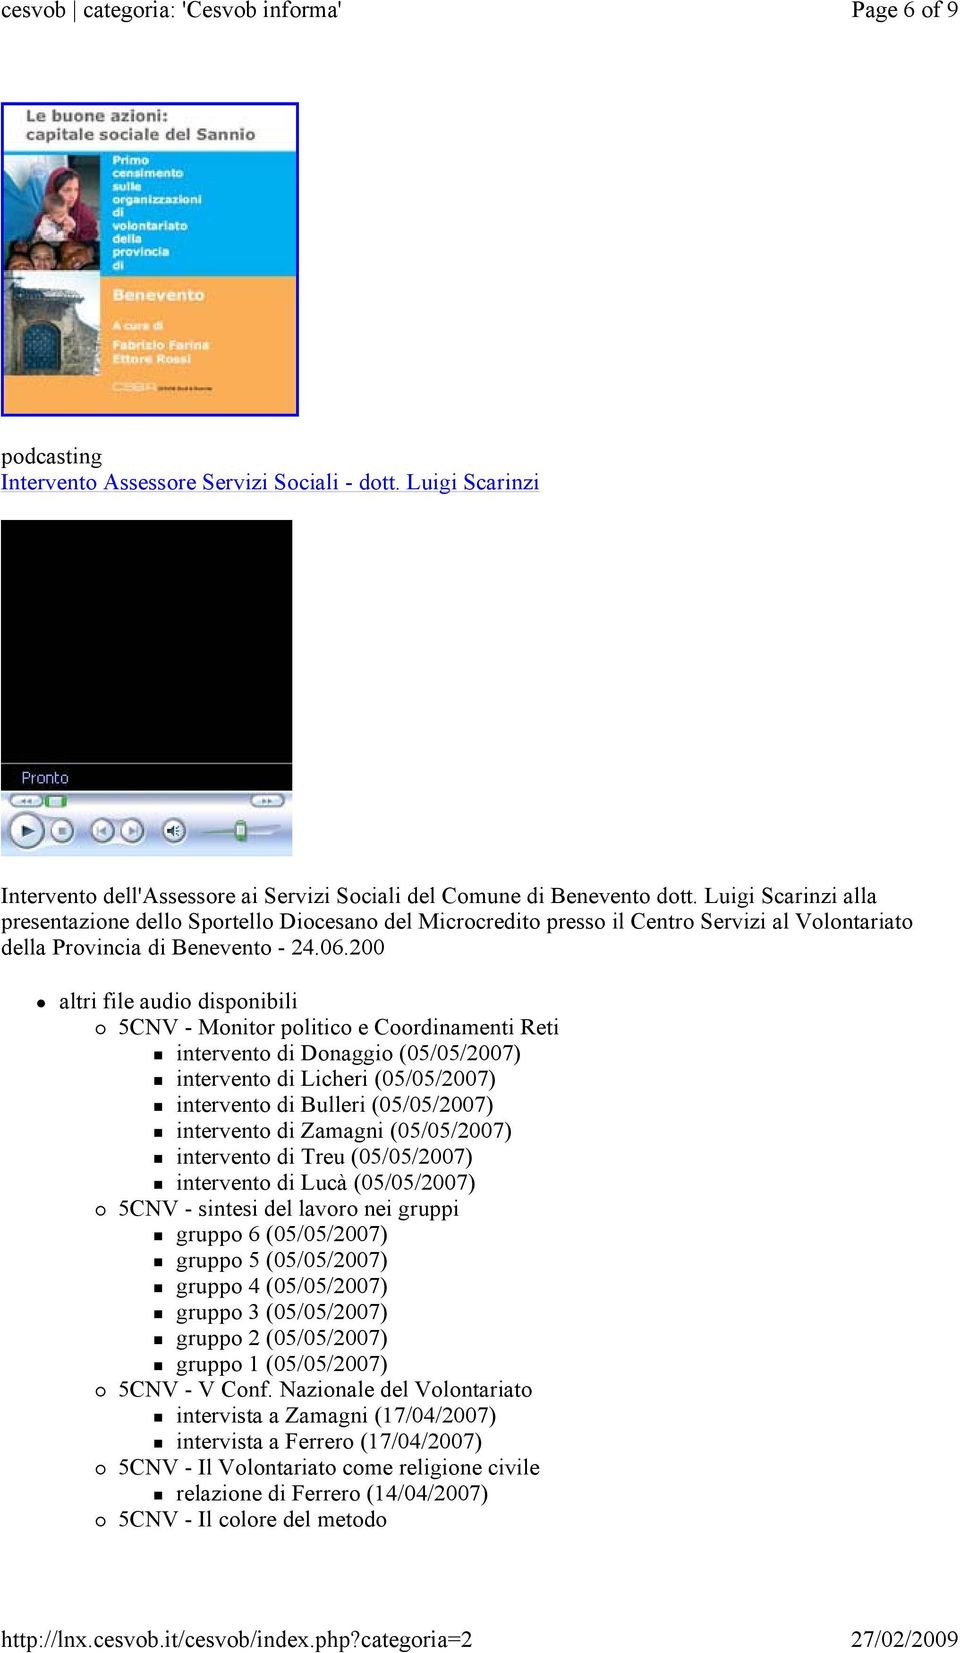 200 altri file audio disponibili 5CNV - Monitor politico e Coordinamenti Reti intervento di Donaggio (05/05/2007) intervento di Licheri (05/05/2007) intervento di Bulleri (05/05/2007) intervento di